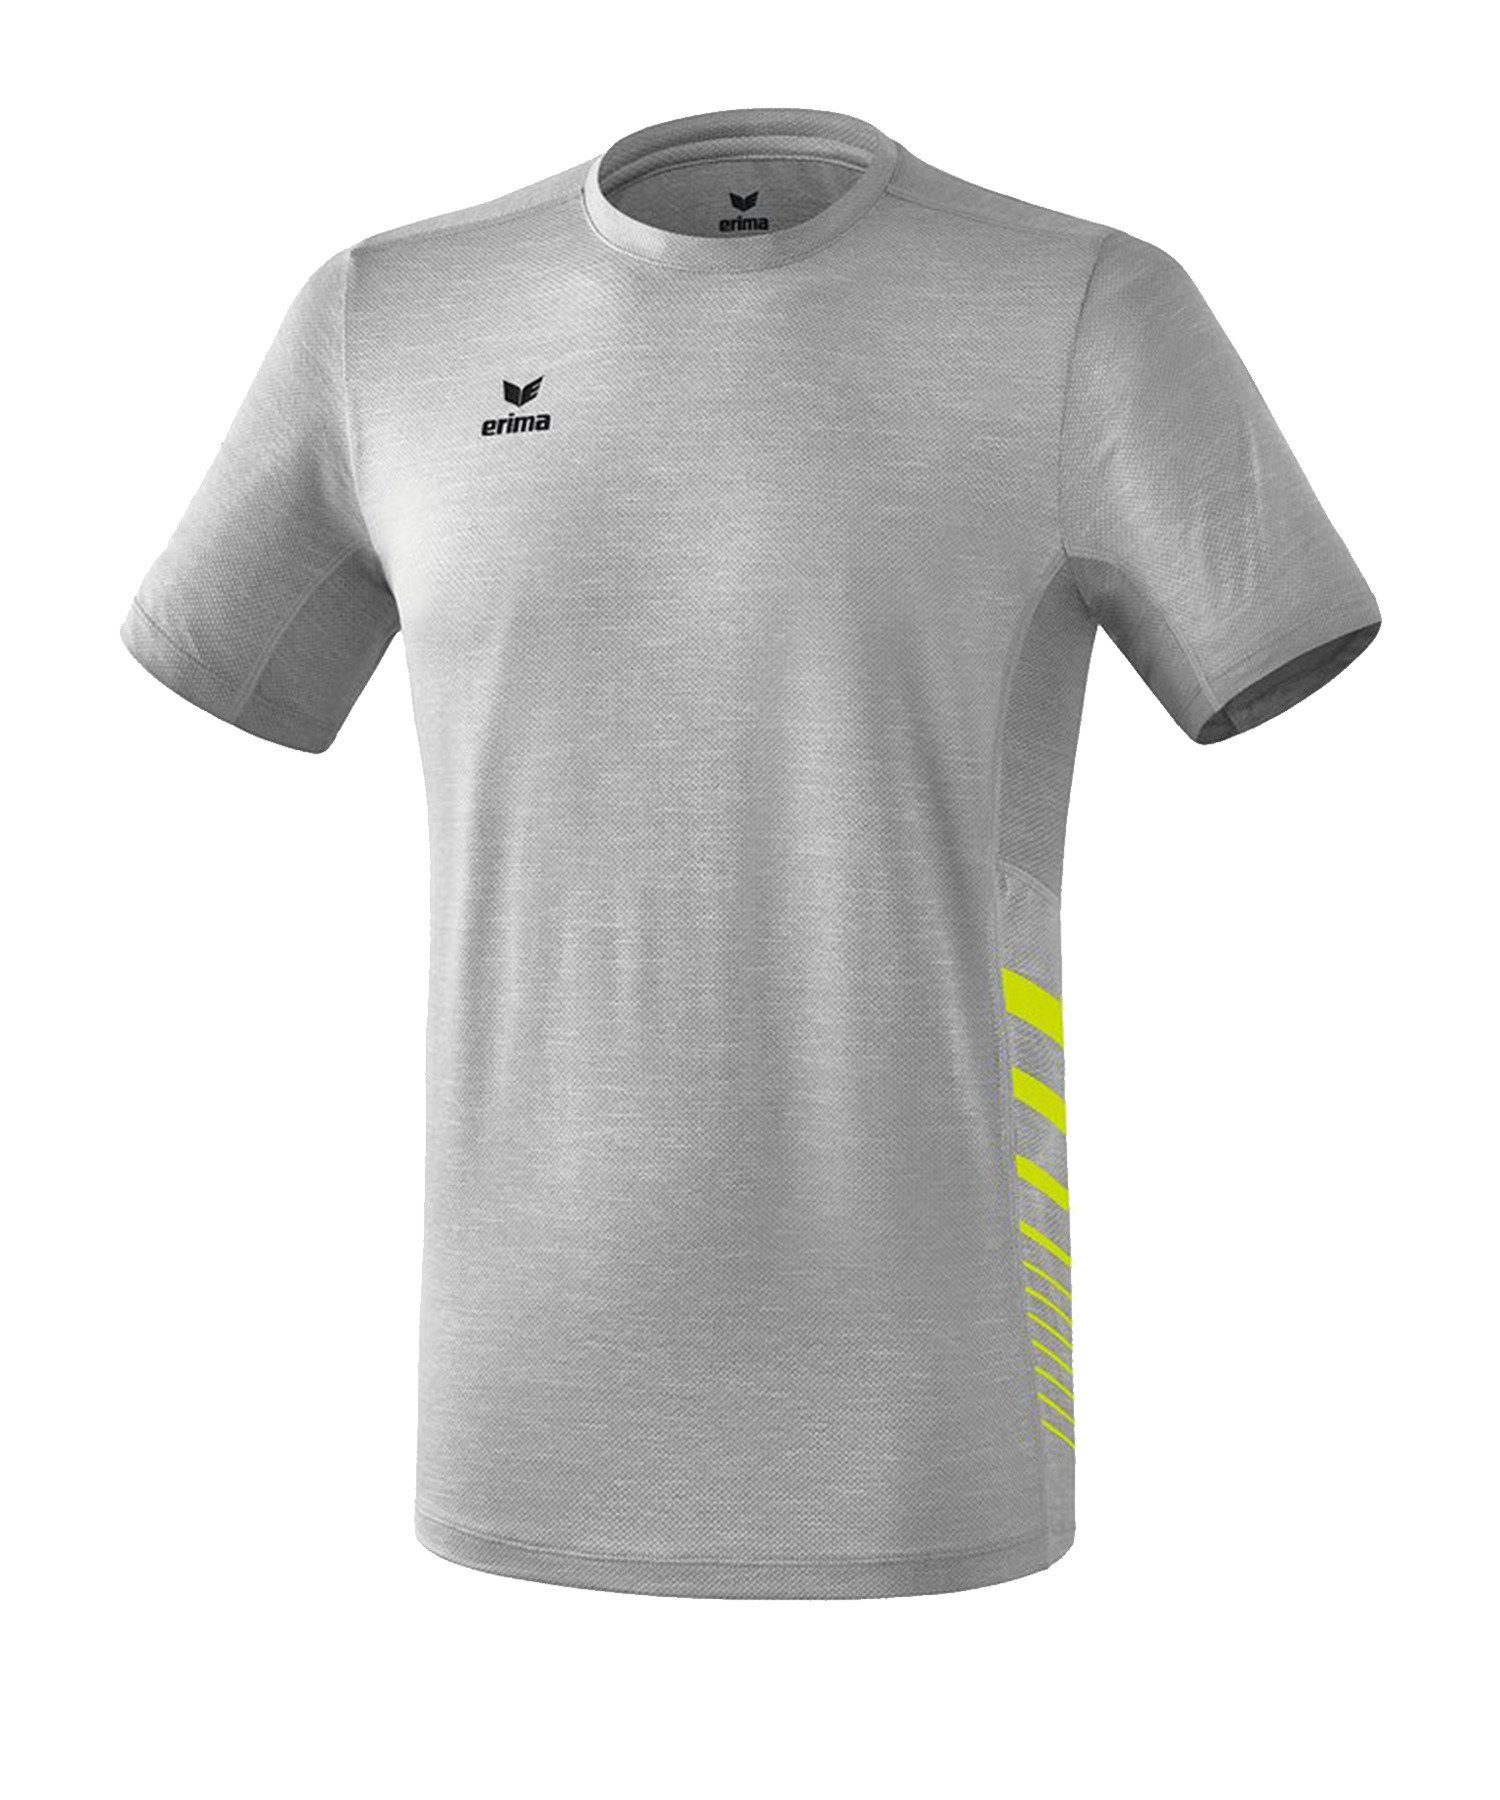 Erima T-Shirt Race Line 2.0 Running T-Shirt default Grau